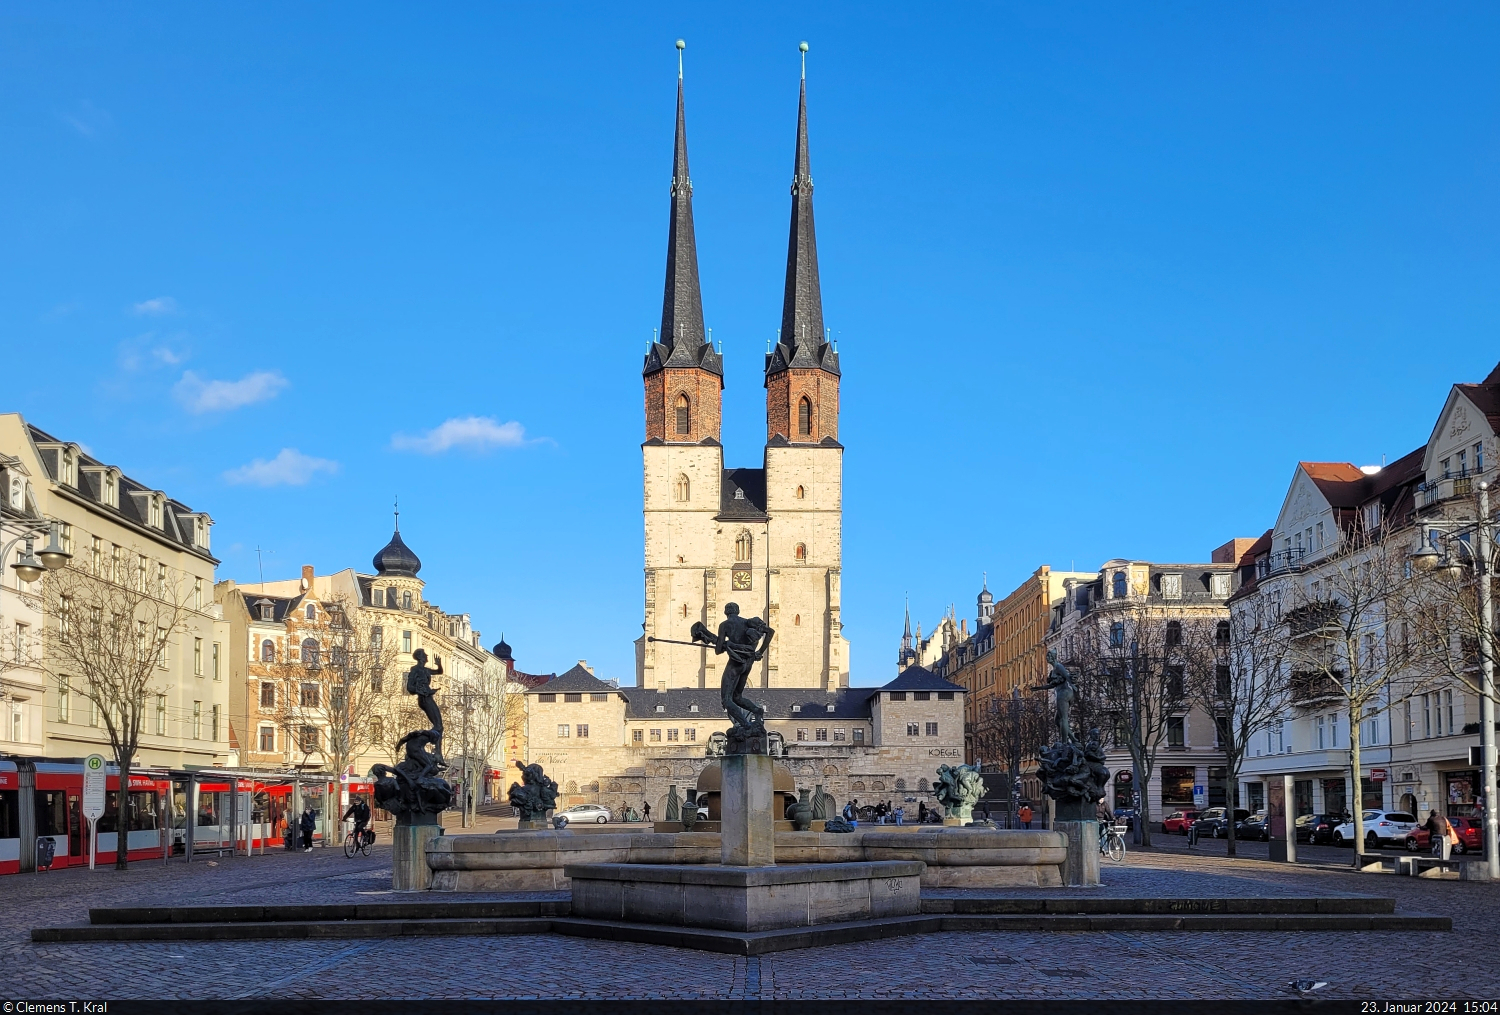 Marktkirche Unser Lieben Frauen mit Gbelbrunnen auf dem Hallmarkt in Halle (Saale).

🕓 23.1.2024 | 15:04 Uhr